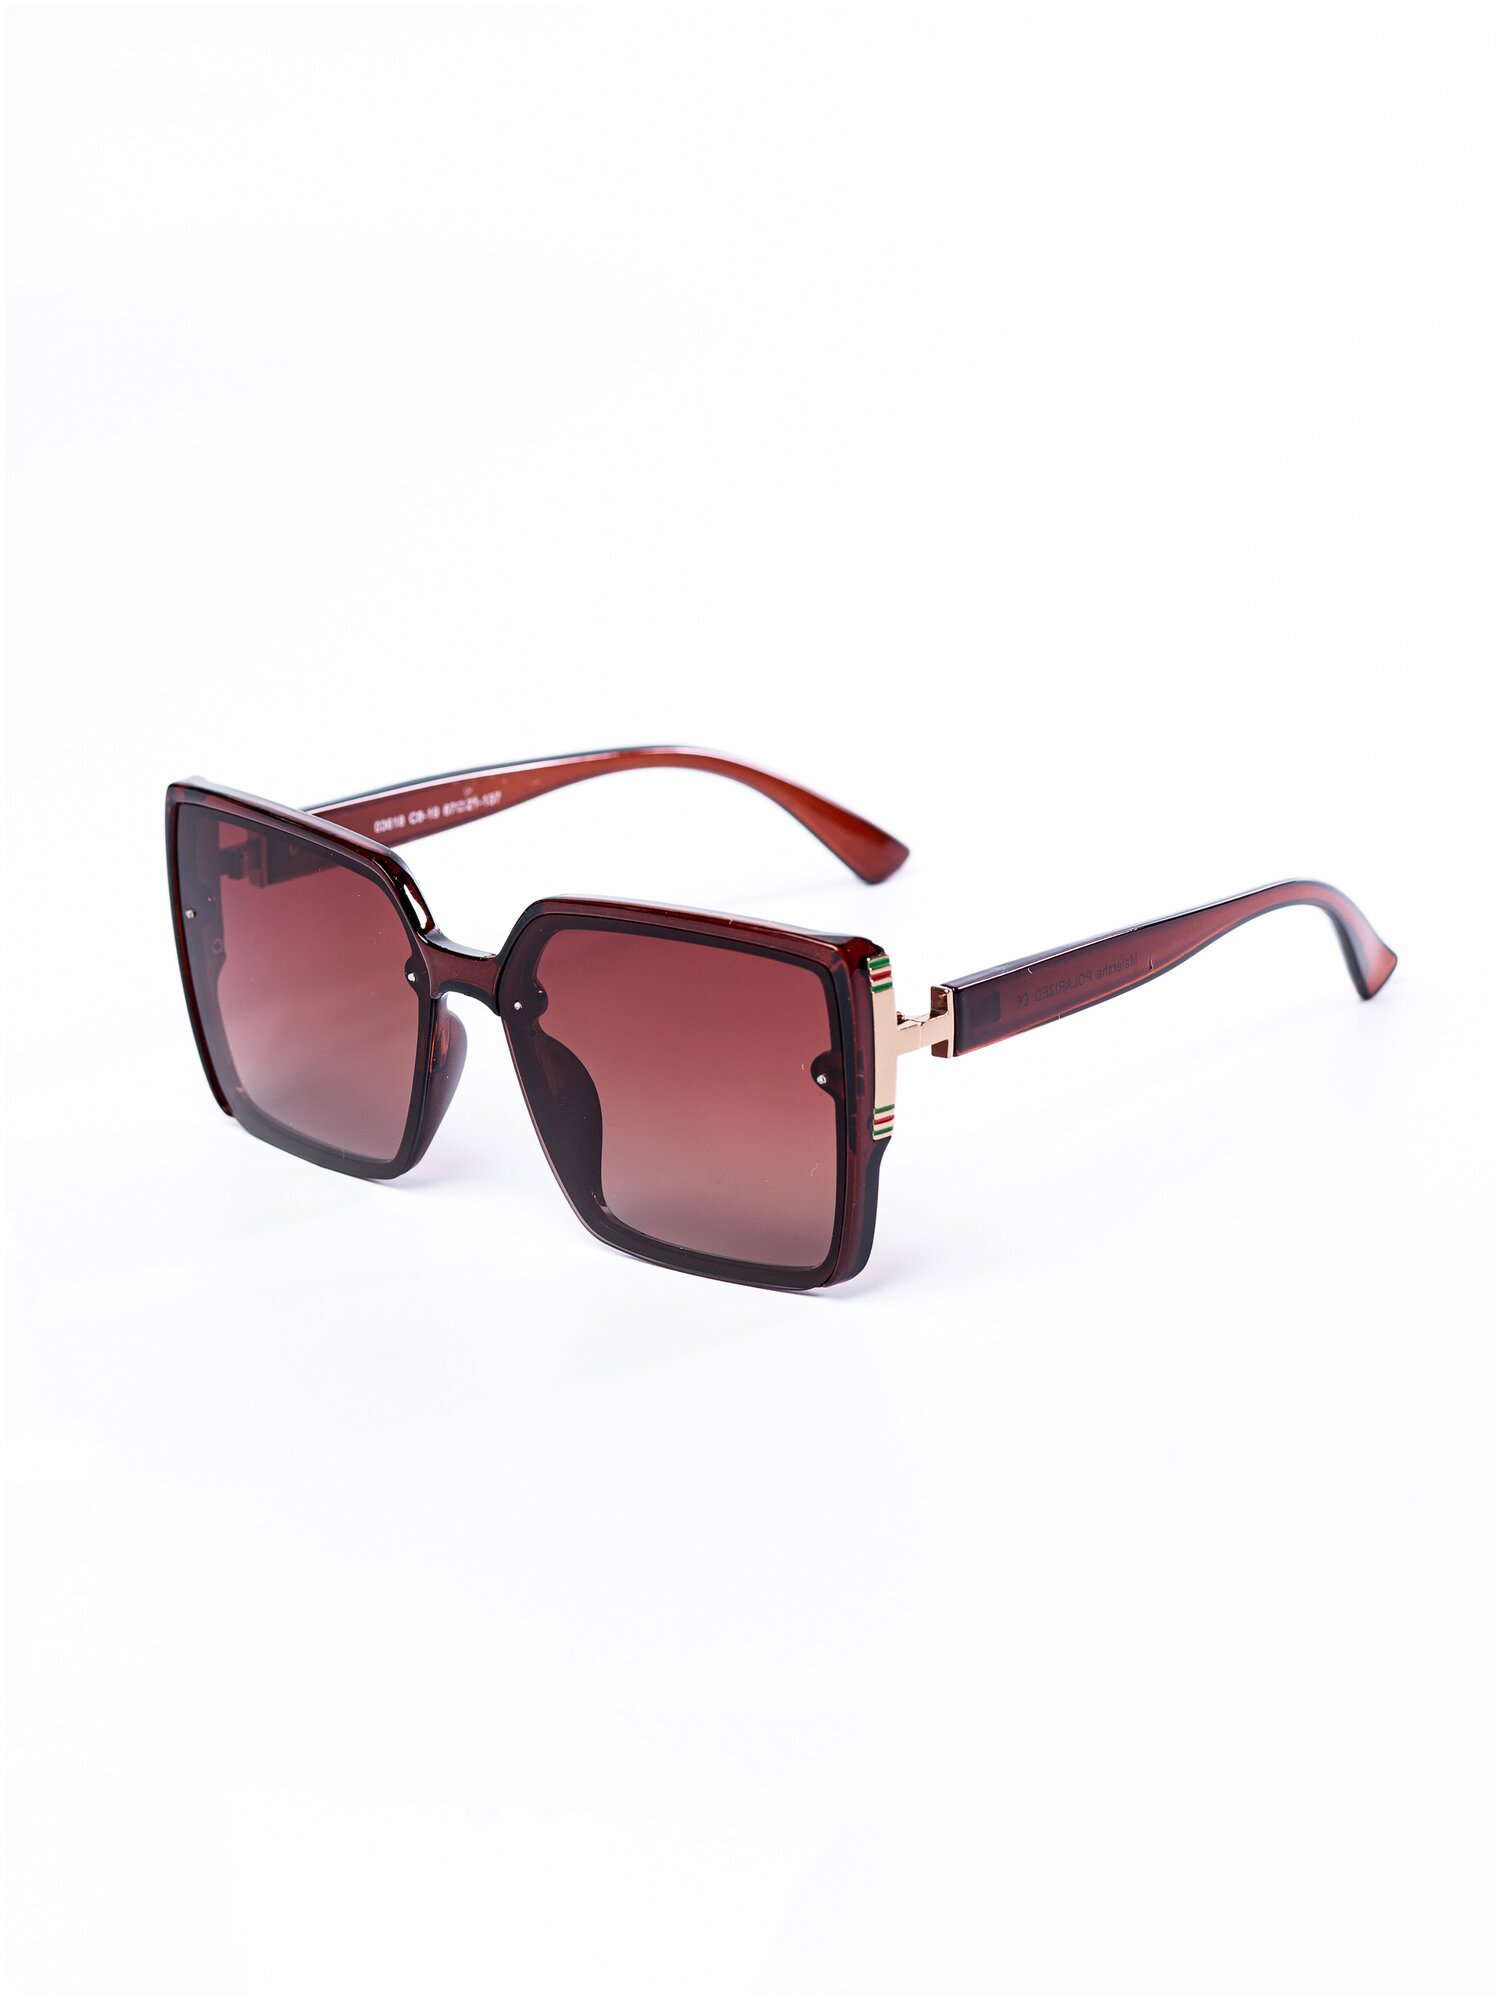 Солнцезащитные очки женские / Оправа квадратная / Стильные очки / Ультрафиолетовый фильтр / Защита UV400 / Темные очки 200422554